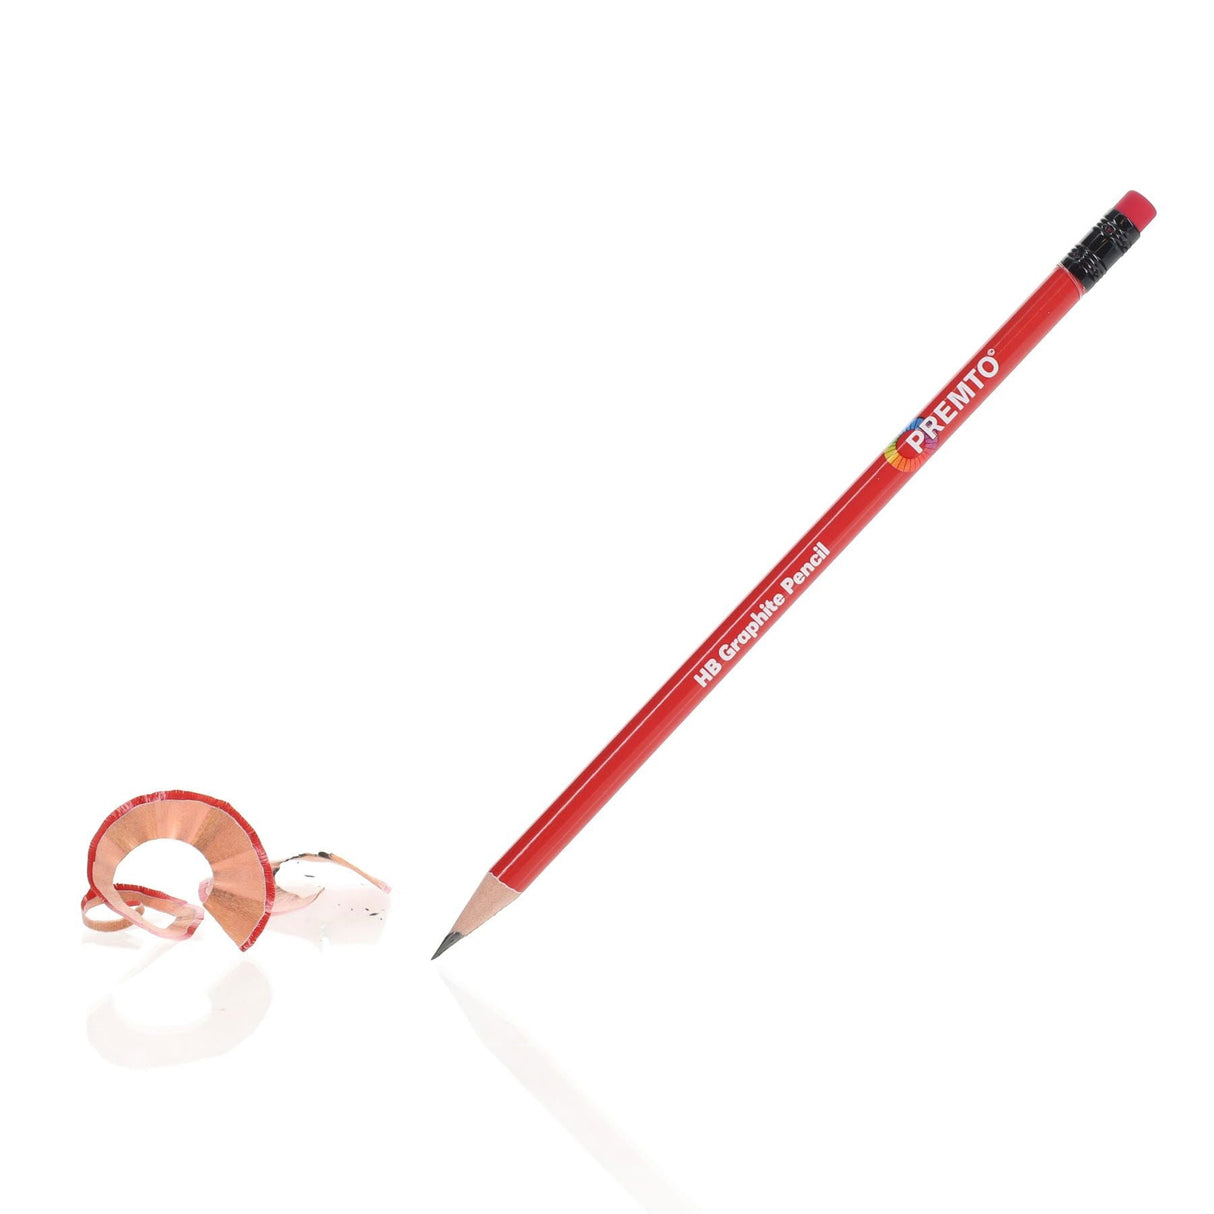 Premto HB Pencils With Eraser Tip - Pack of 5 | Stationery Shop UK